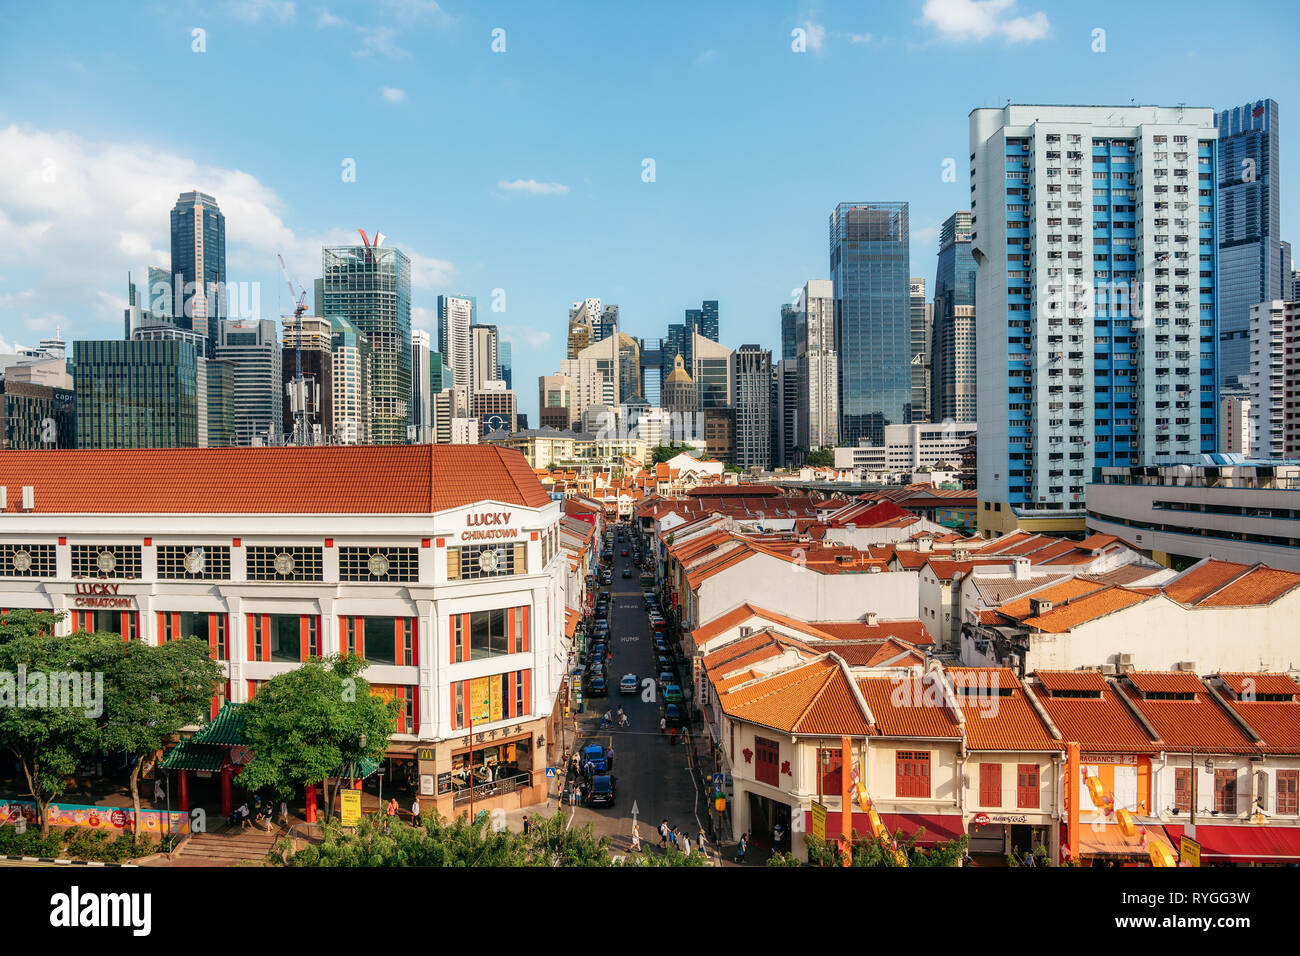 Chinatown, Singapur - Febrero 8, 2019: Vista aérea de Chinatown con tejados rojos y del Distrito Central de Negocios contra el cielo azul Foto de stock